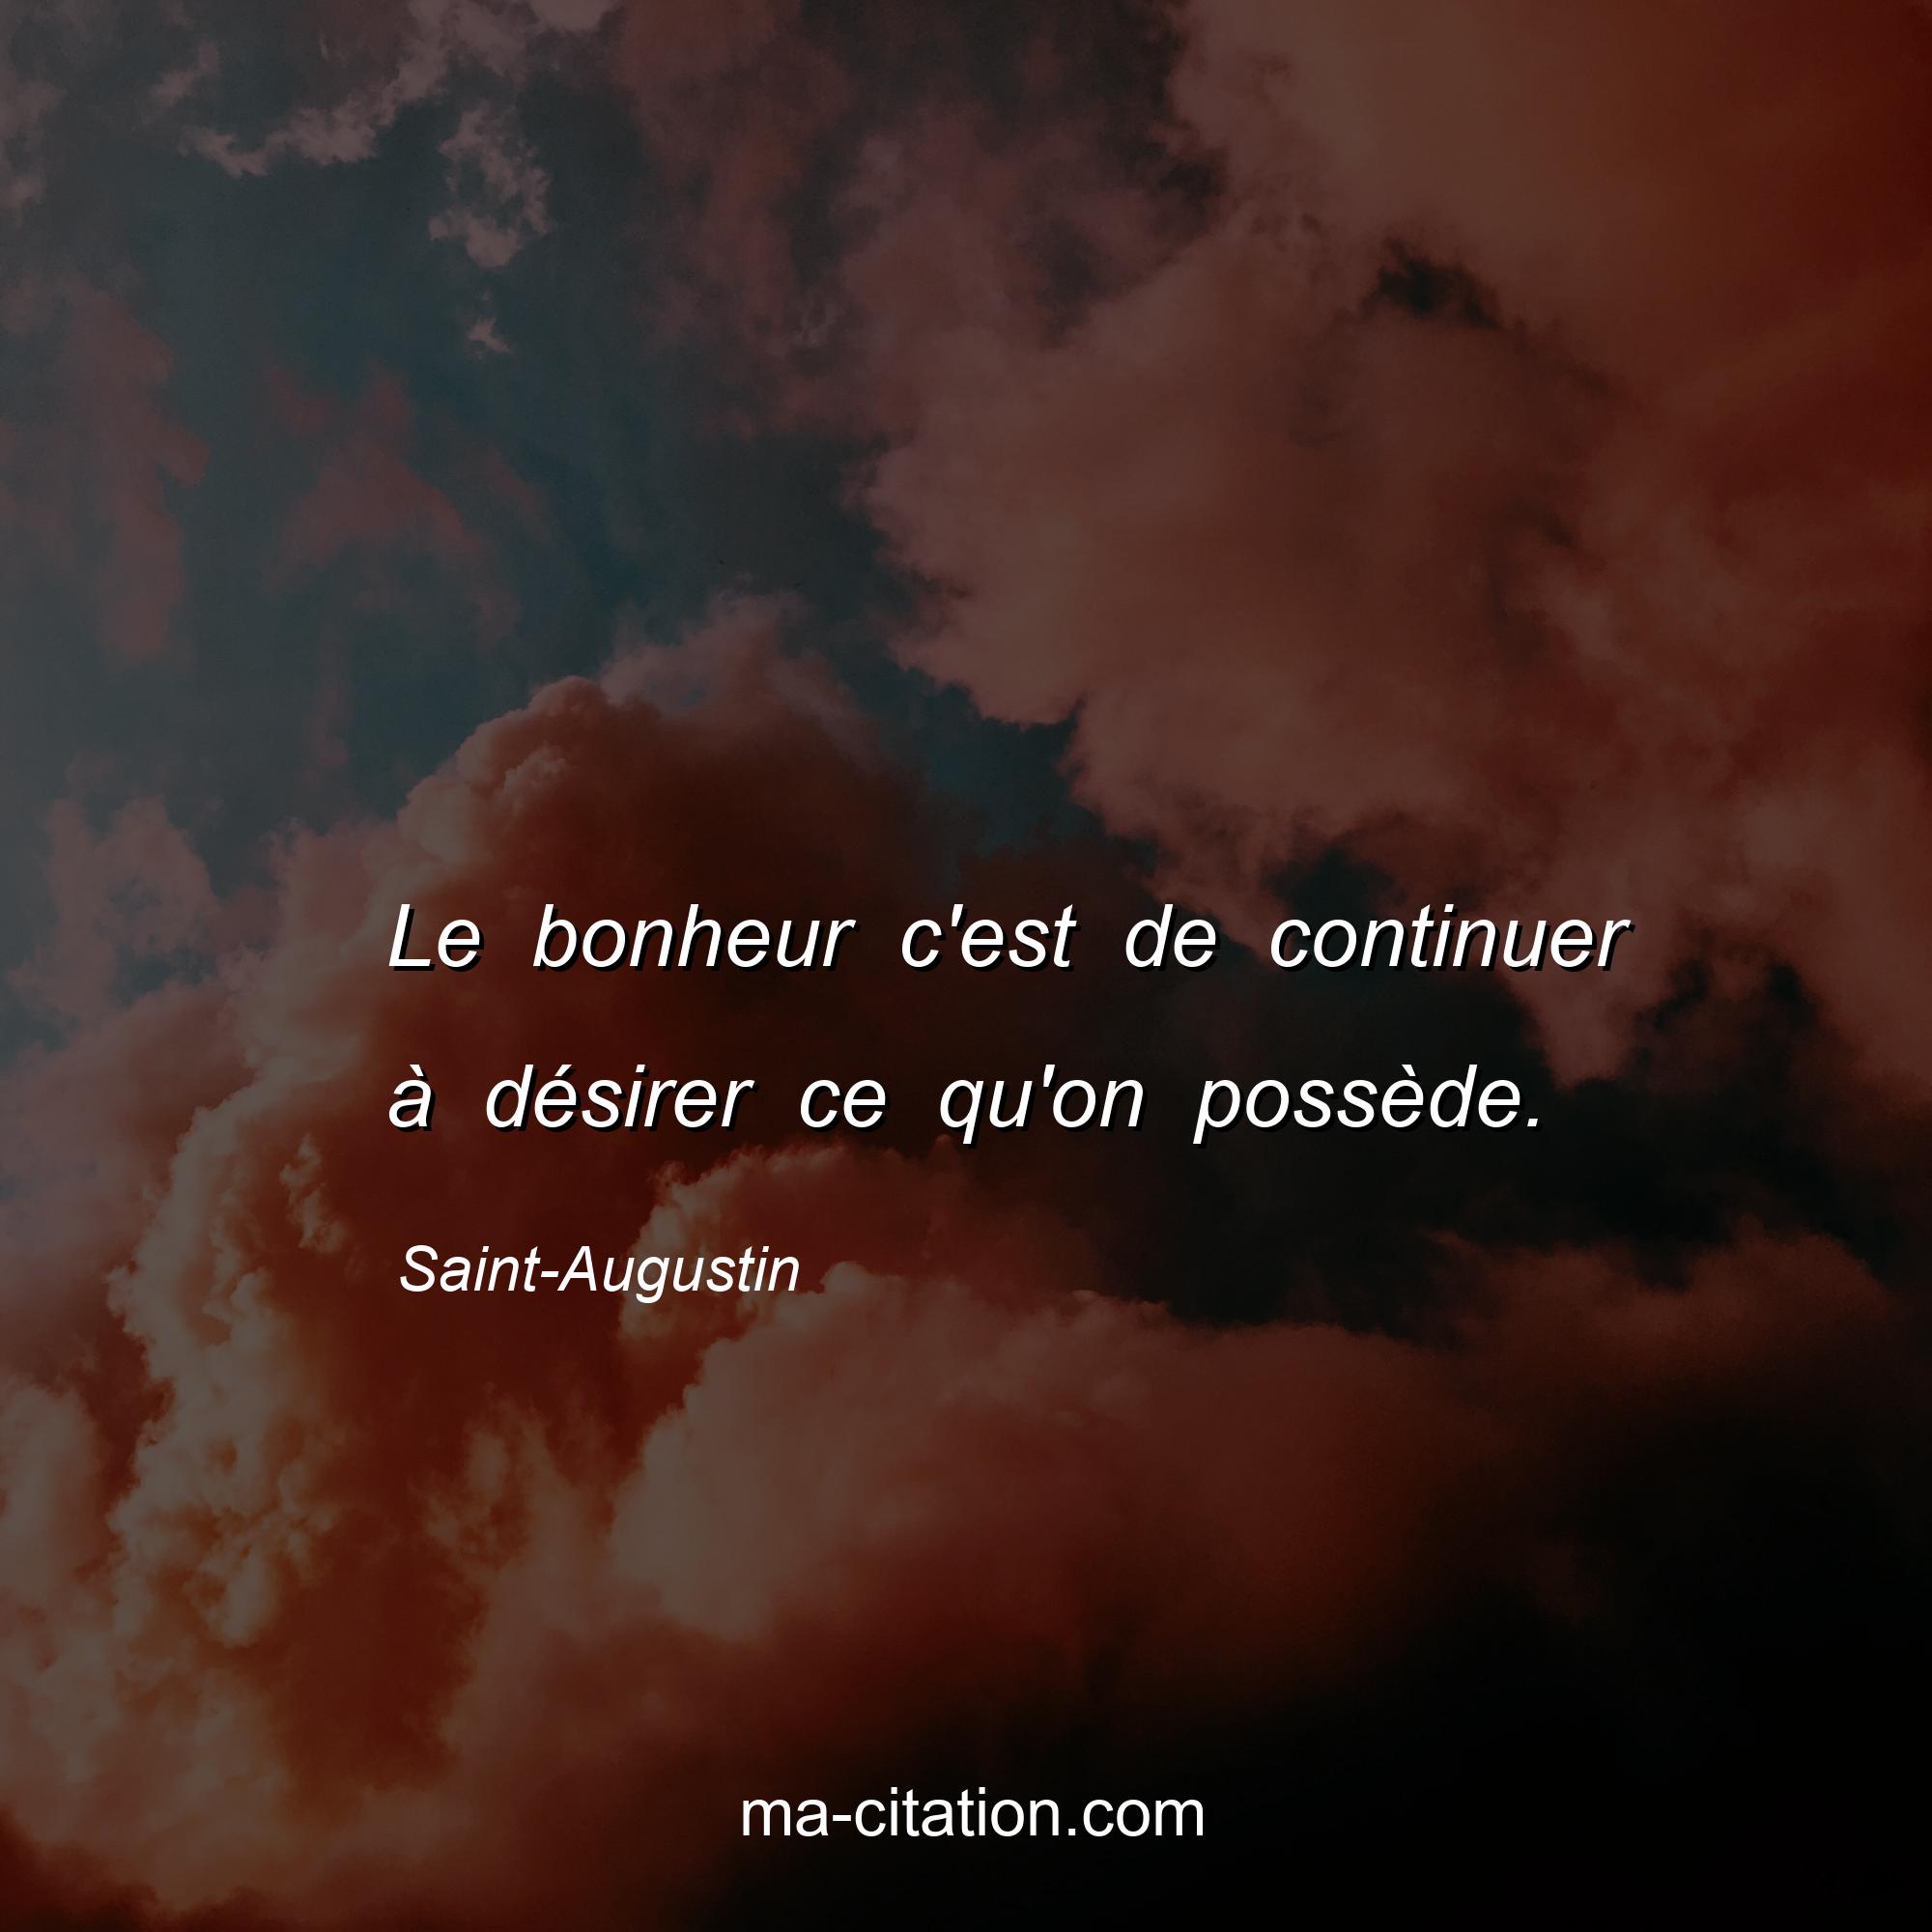 Saint-Augustin : Le bonheur c'est de continuer à désirer ce qu'on possède.